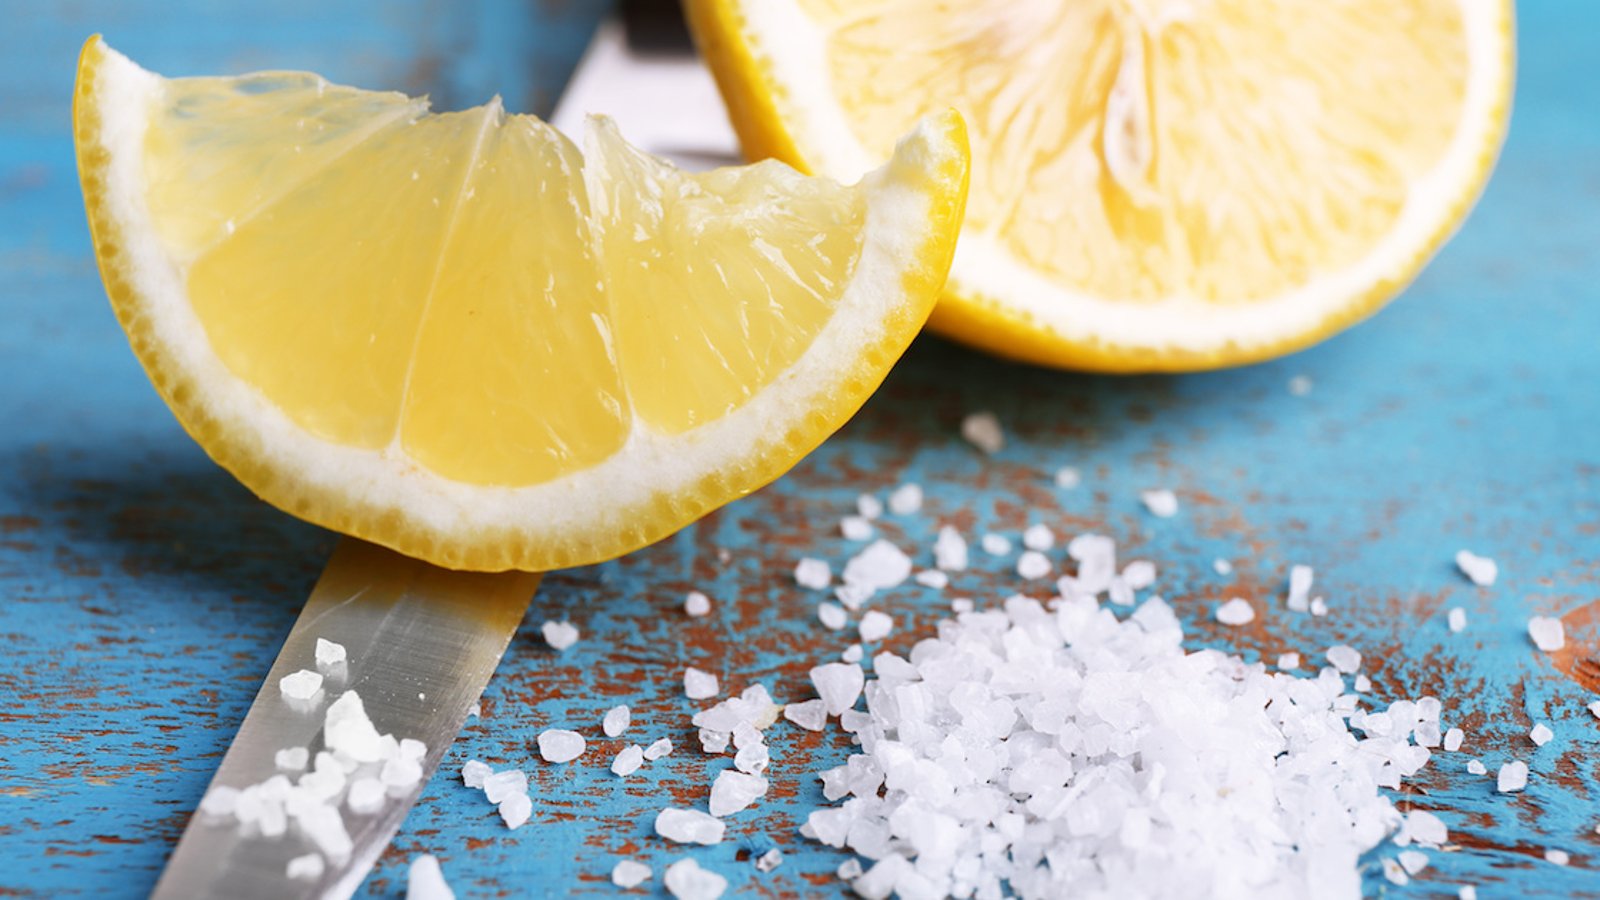 Découvrez en quoi laisser un citron coupé saupoudré de sel toute une nuit dans une pièce peut vous êtes très utile